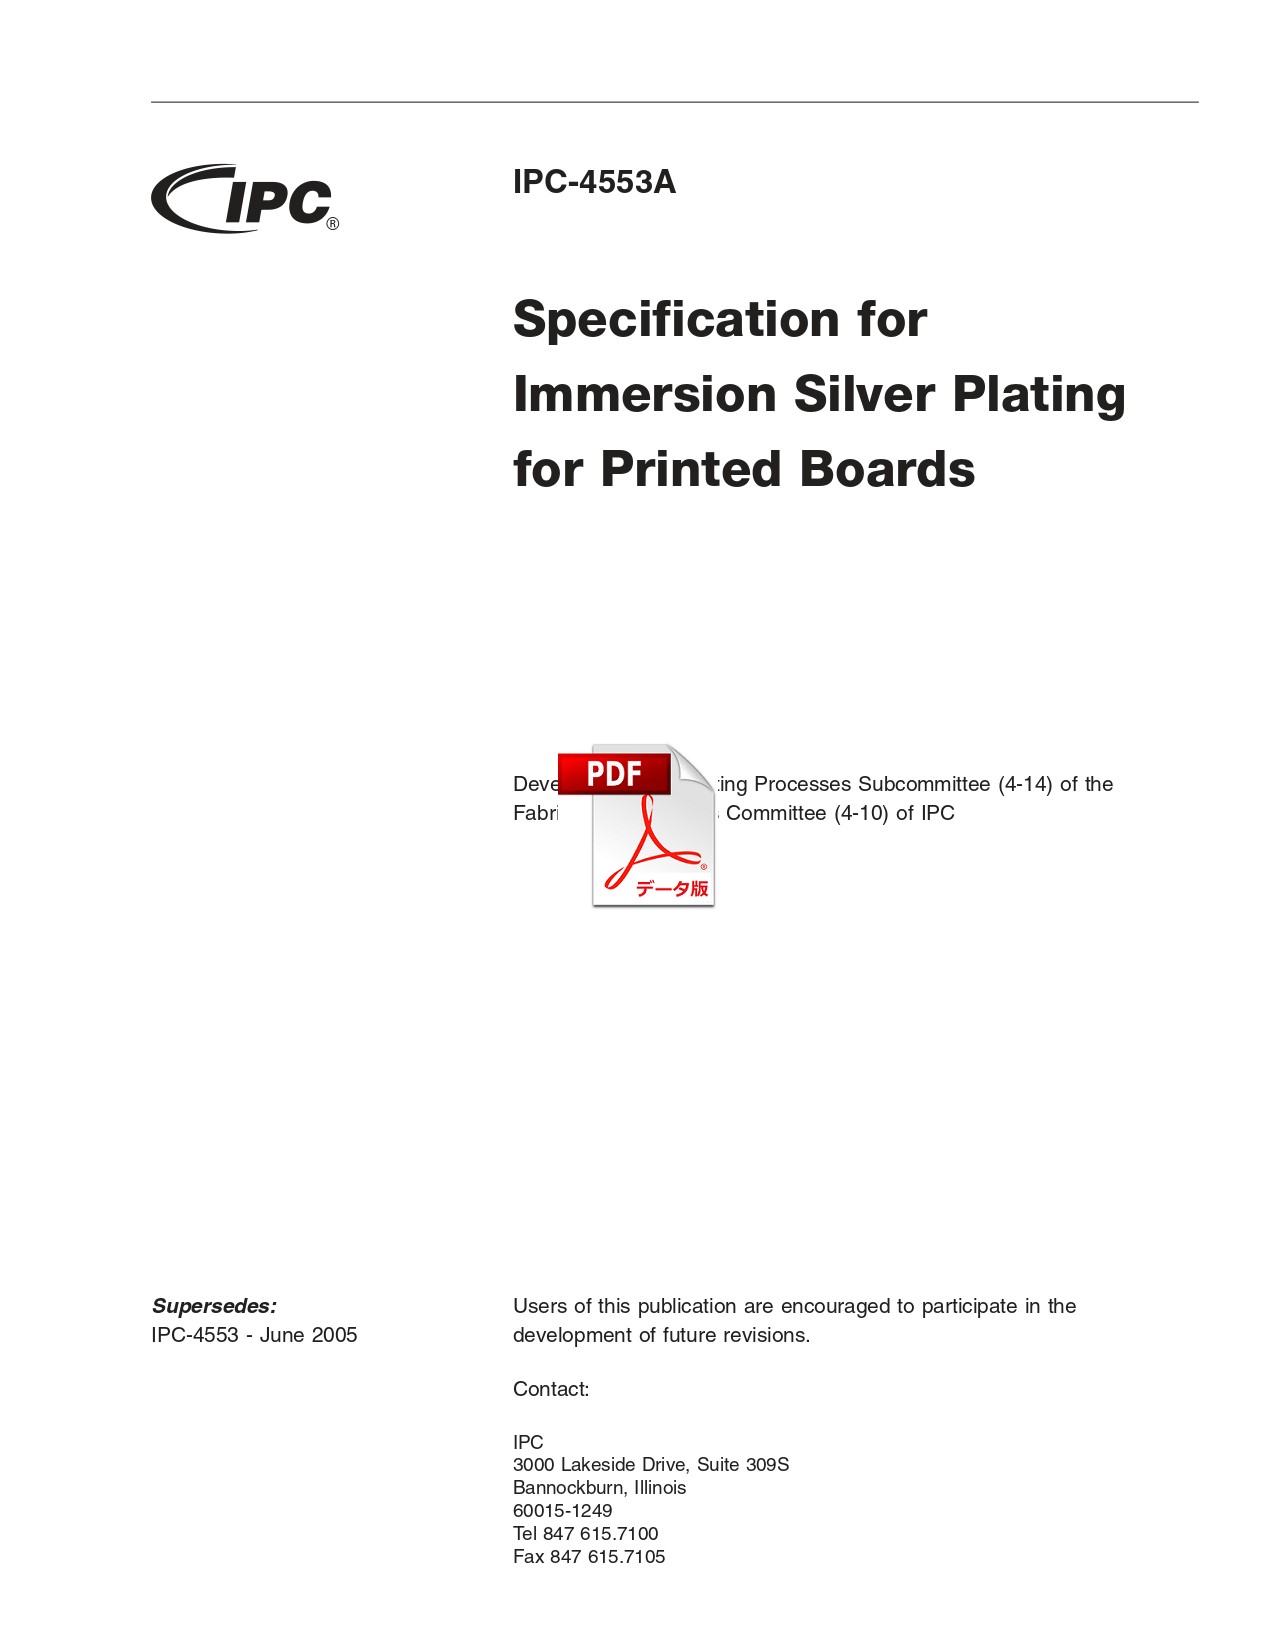 ［英語版］IPC-4553A: Specification for Immersion Silver Plating for Printed Boards